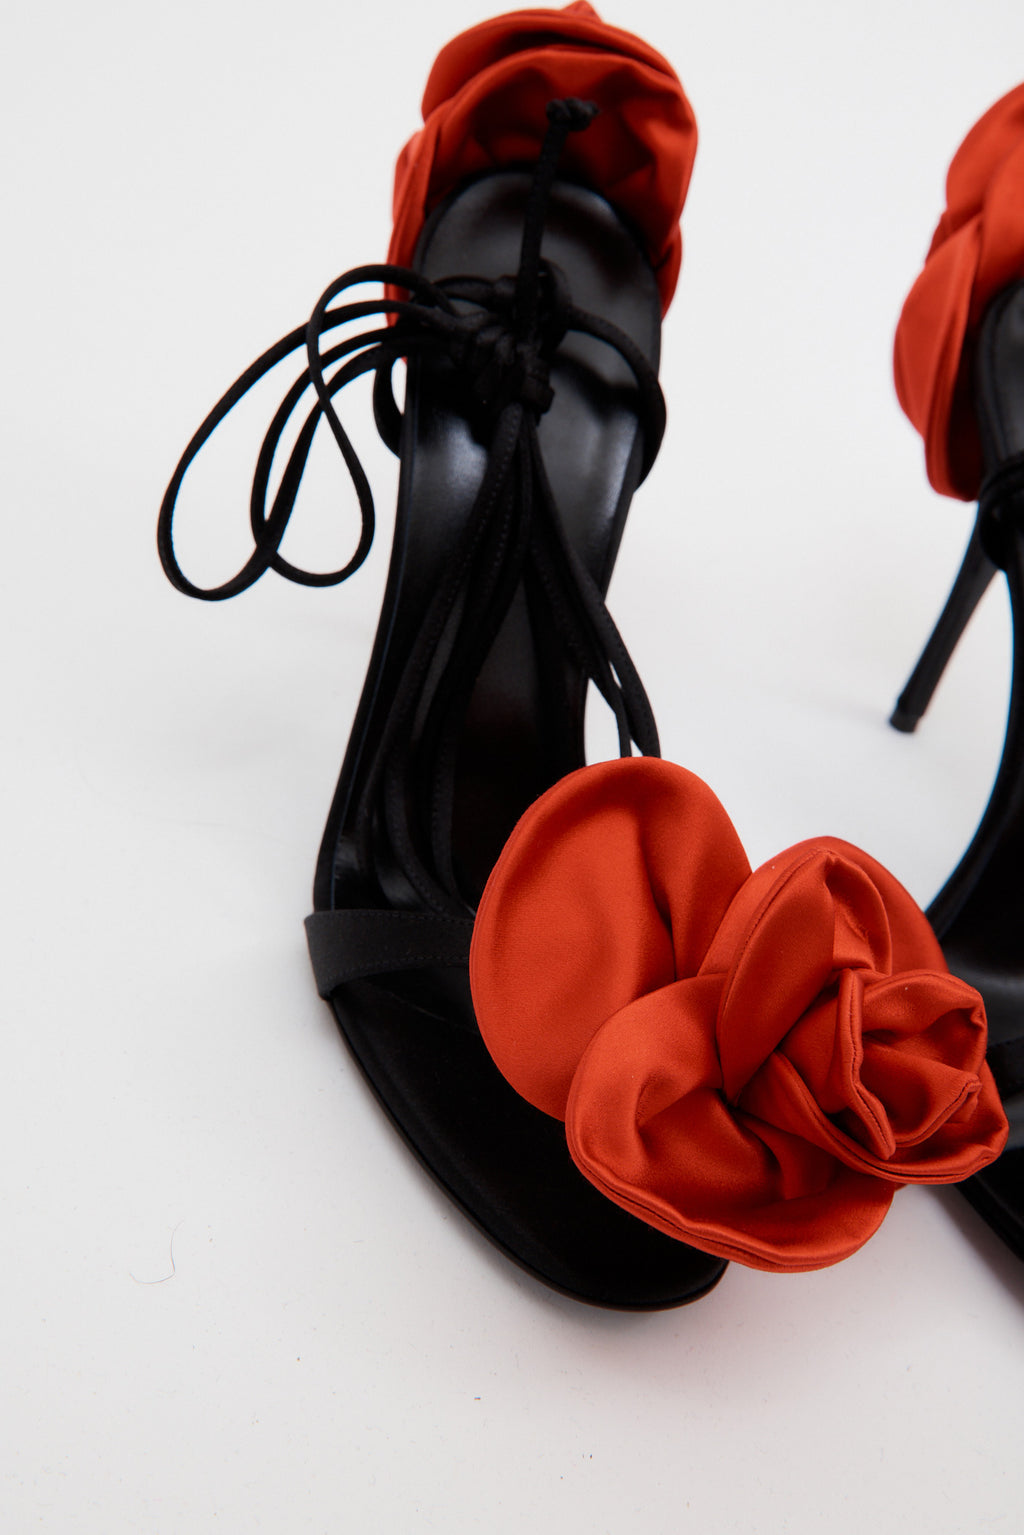 Double Flower Black Red Heel Sandals